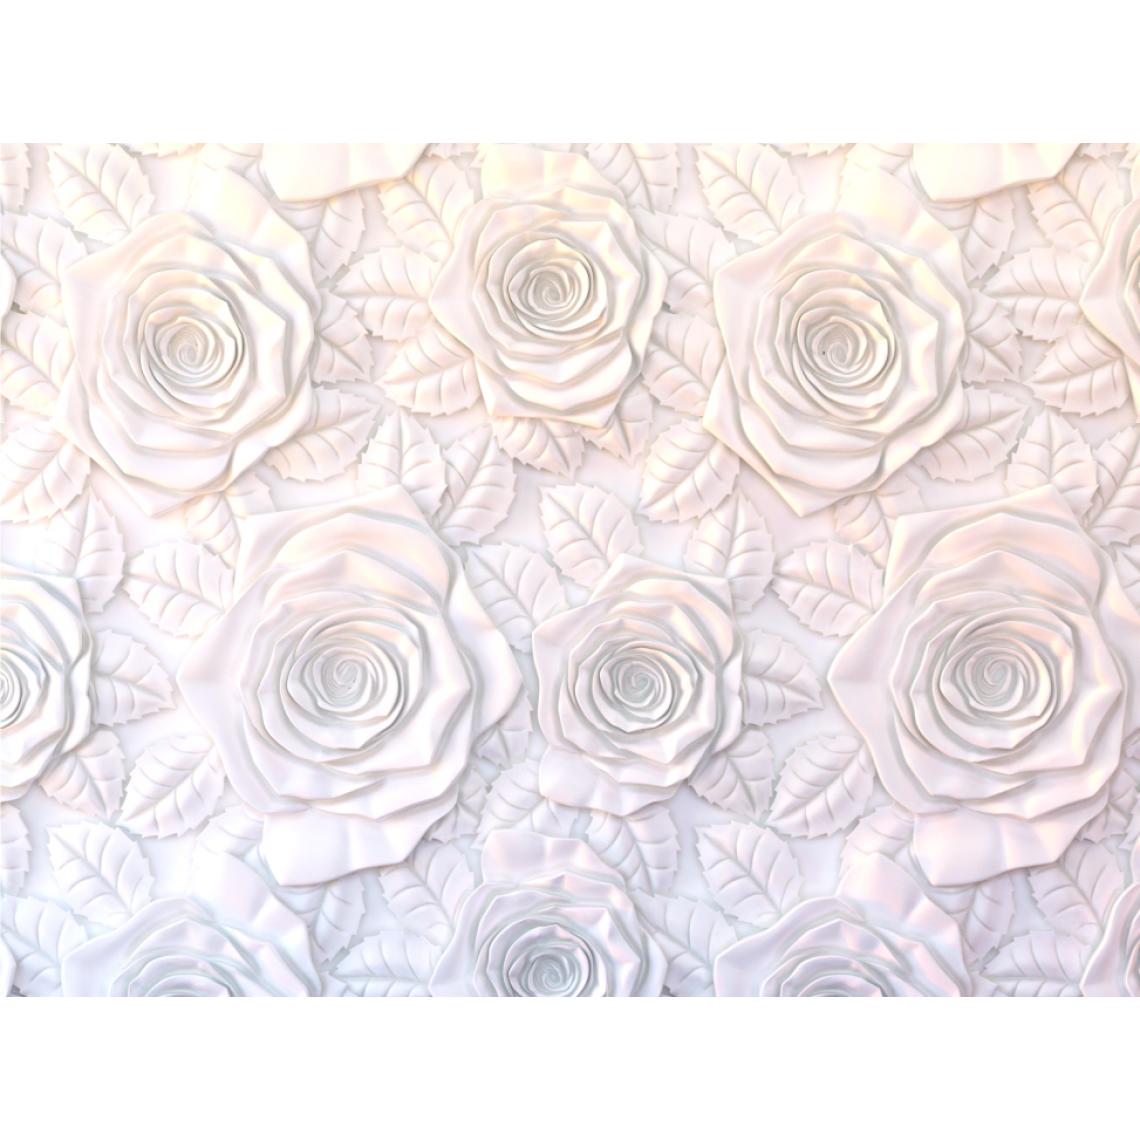 Sanders & Sanders - Sanders & Sanders papier peint panoramique fleurs effet 3D blanc - 600508 - 360 x 270 cm - Papier peint